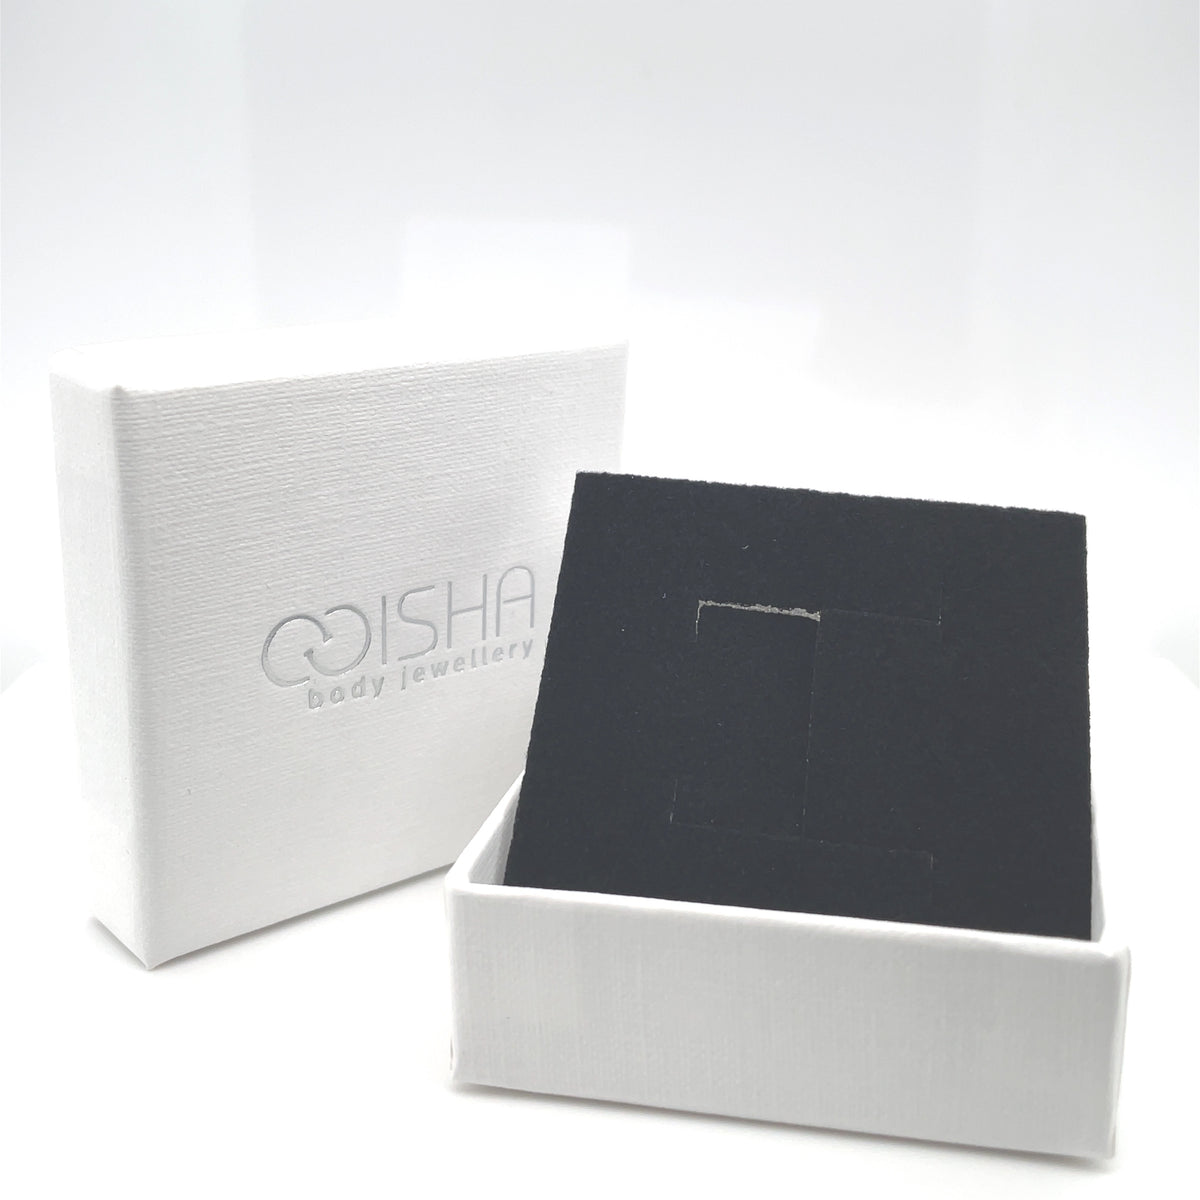 Isha Gift Box - Isha Body Jewellery